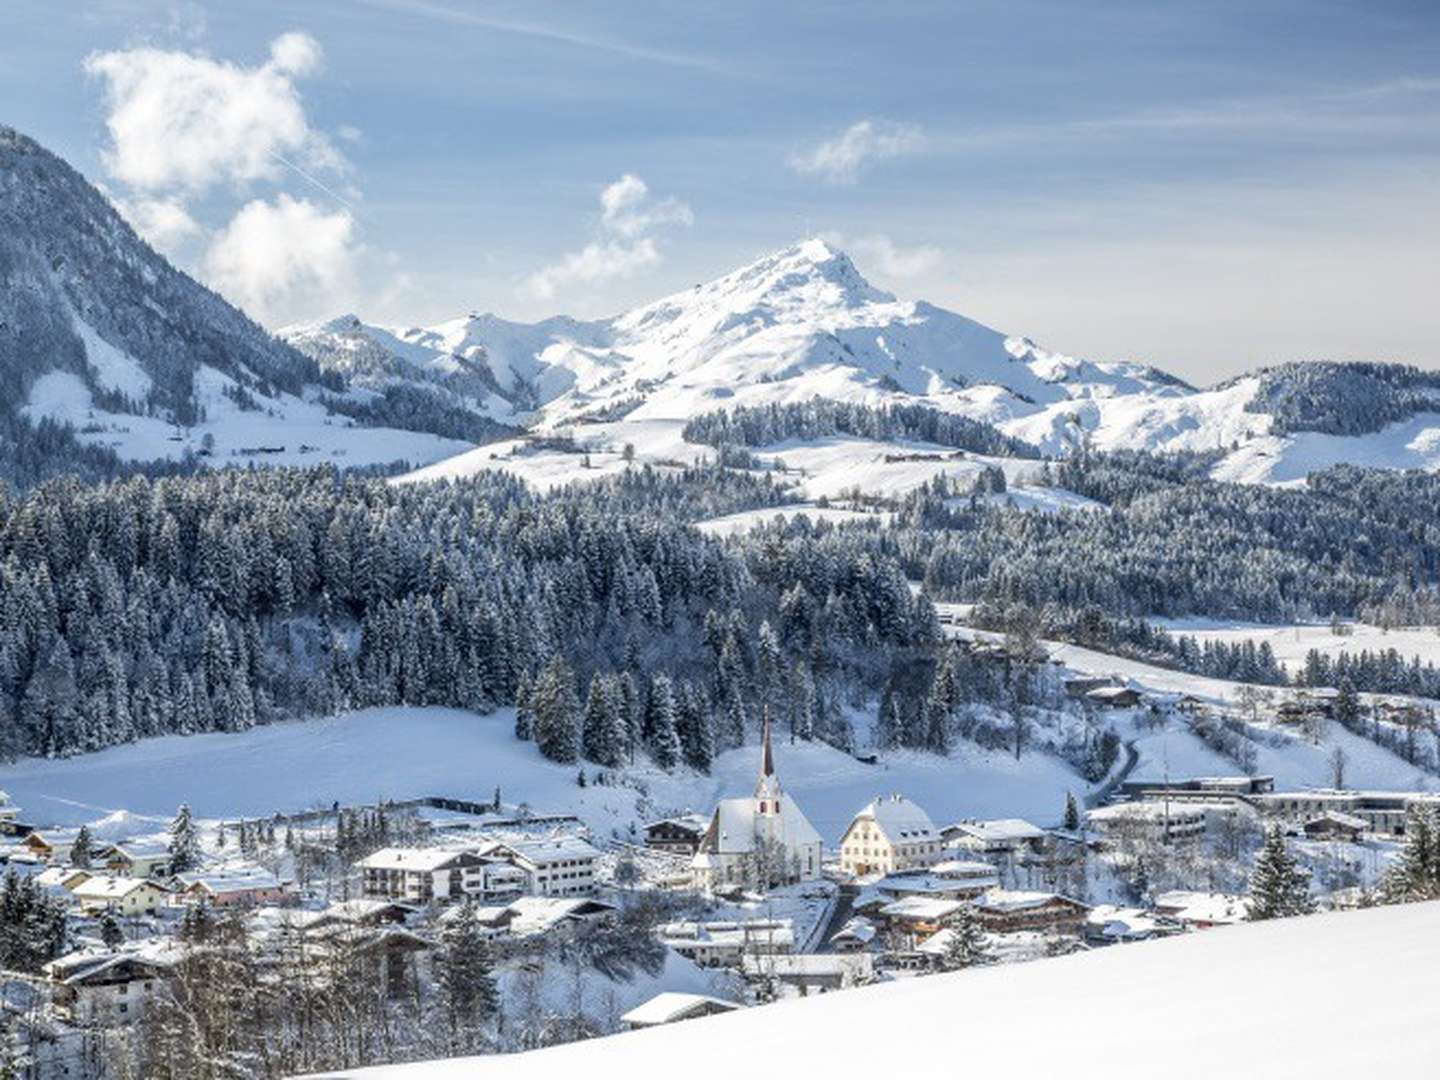 Urlaubstage in den Kitzbüheler Alpen - Berge & Wellness im Adults Only Boutique-Hotel